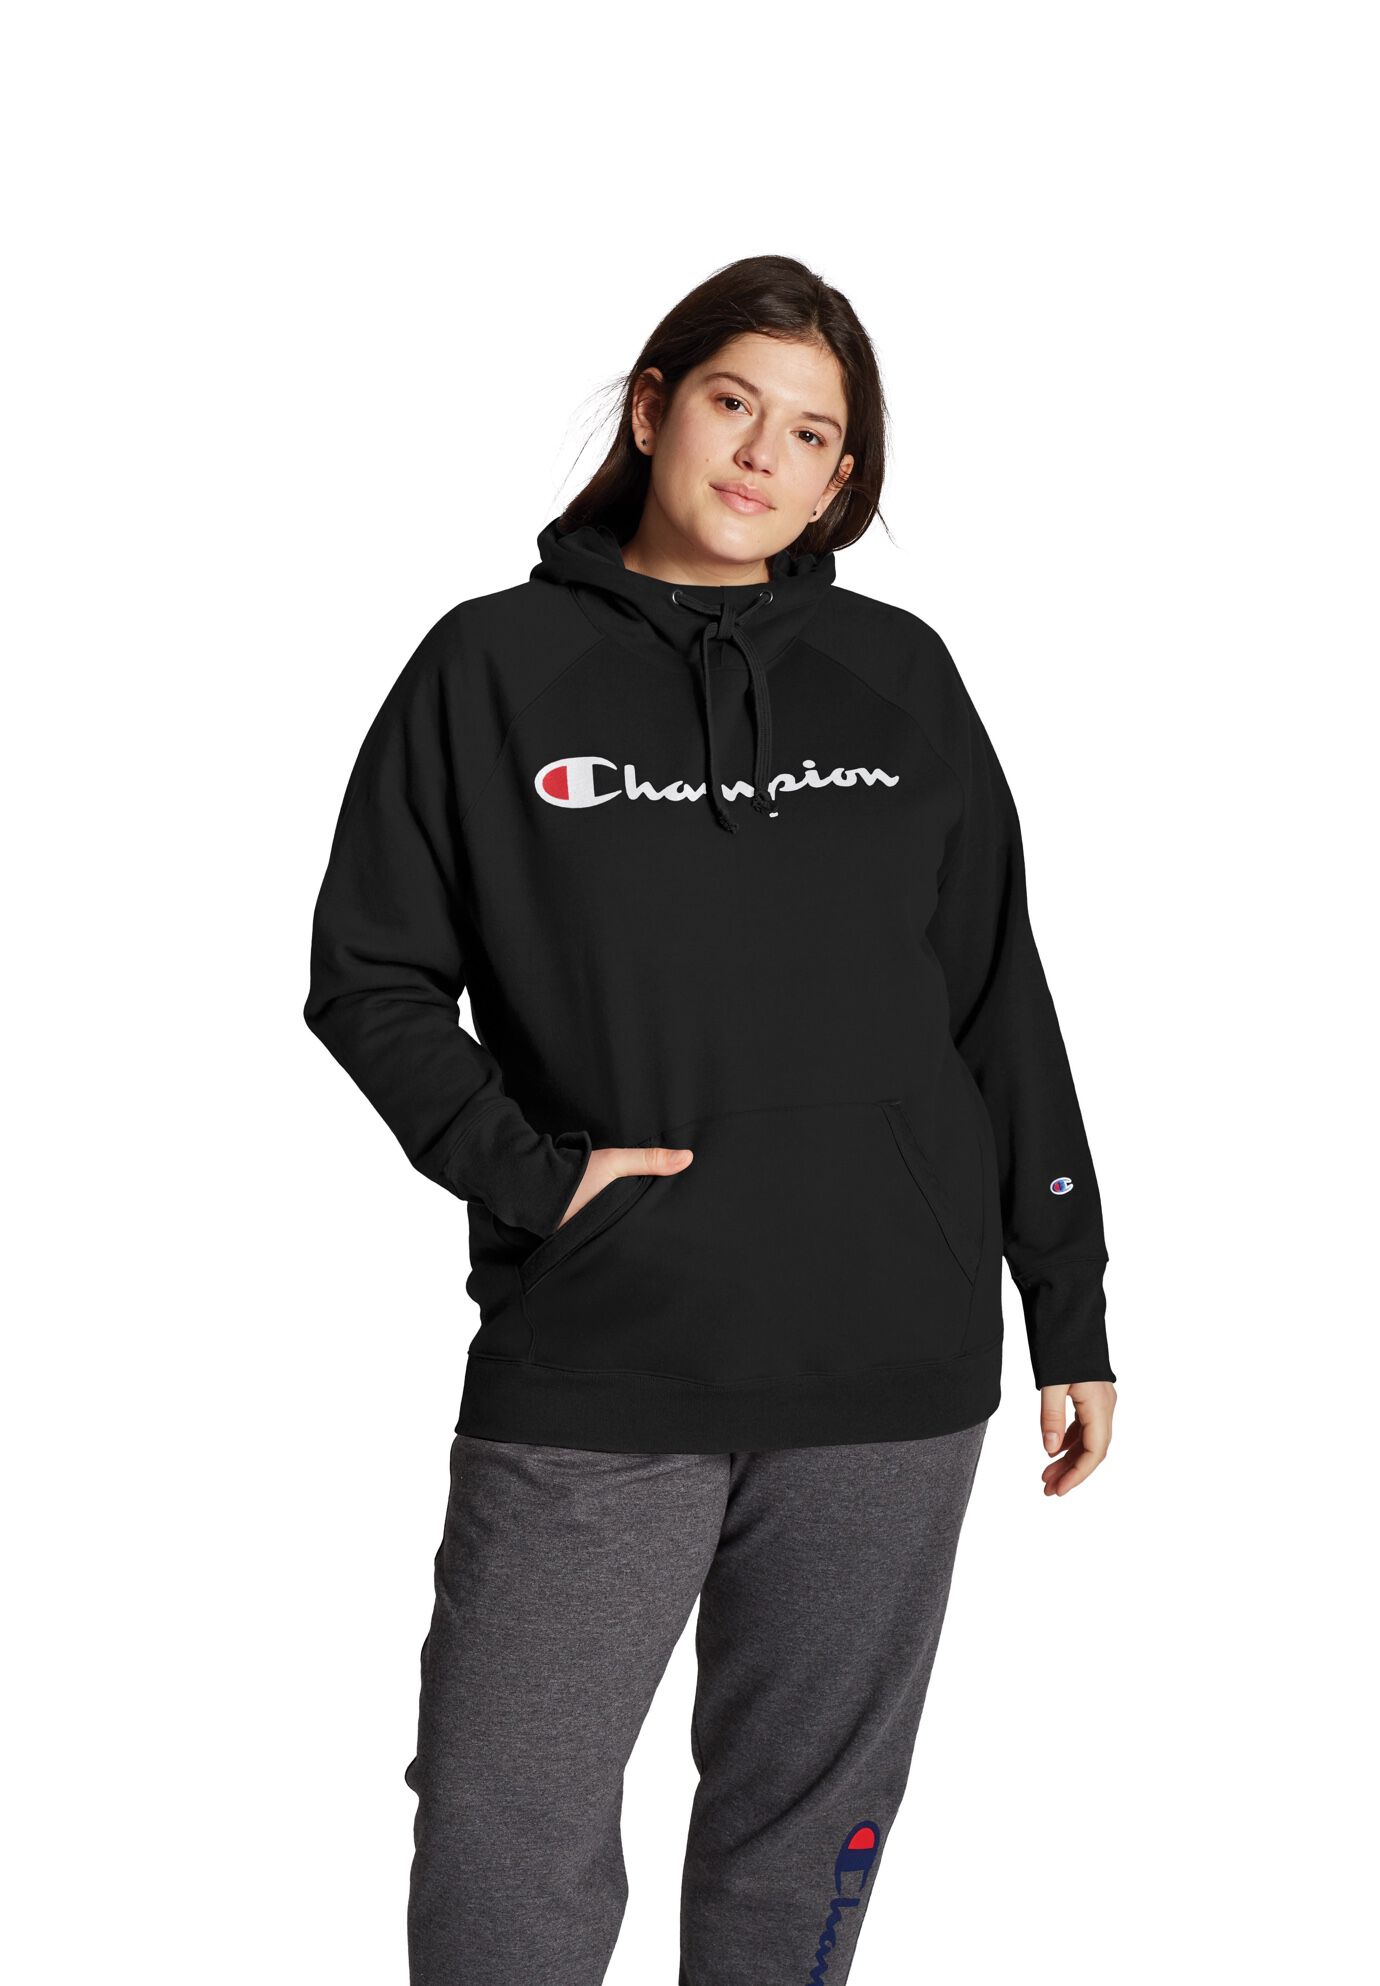 Plus Size Women's Champion Women's Plus Powerblend® Fleece Hoodie, Script Logo by Champion in Black (Size 2X)